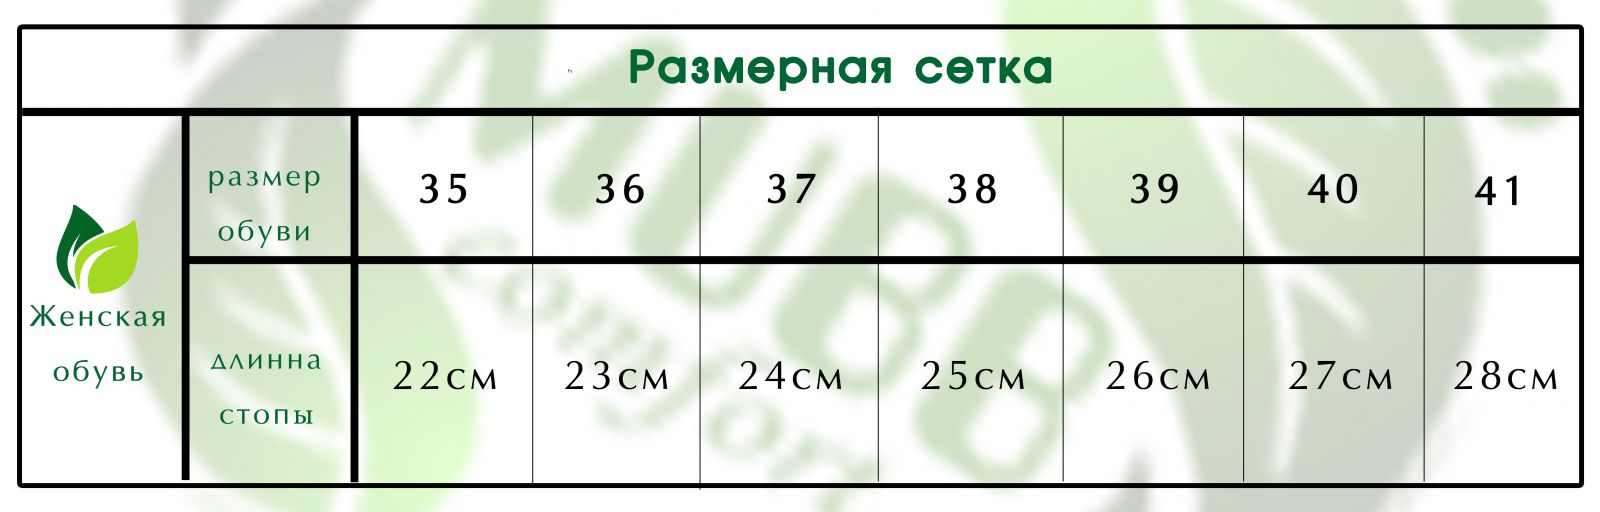 505 Женские кожаные тапочки VESUVIO RED 40р. (505/40/R)